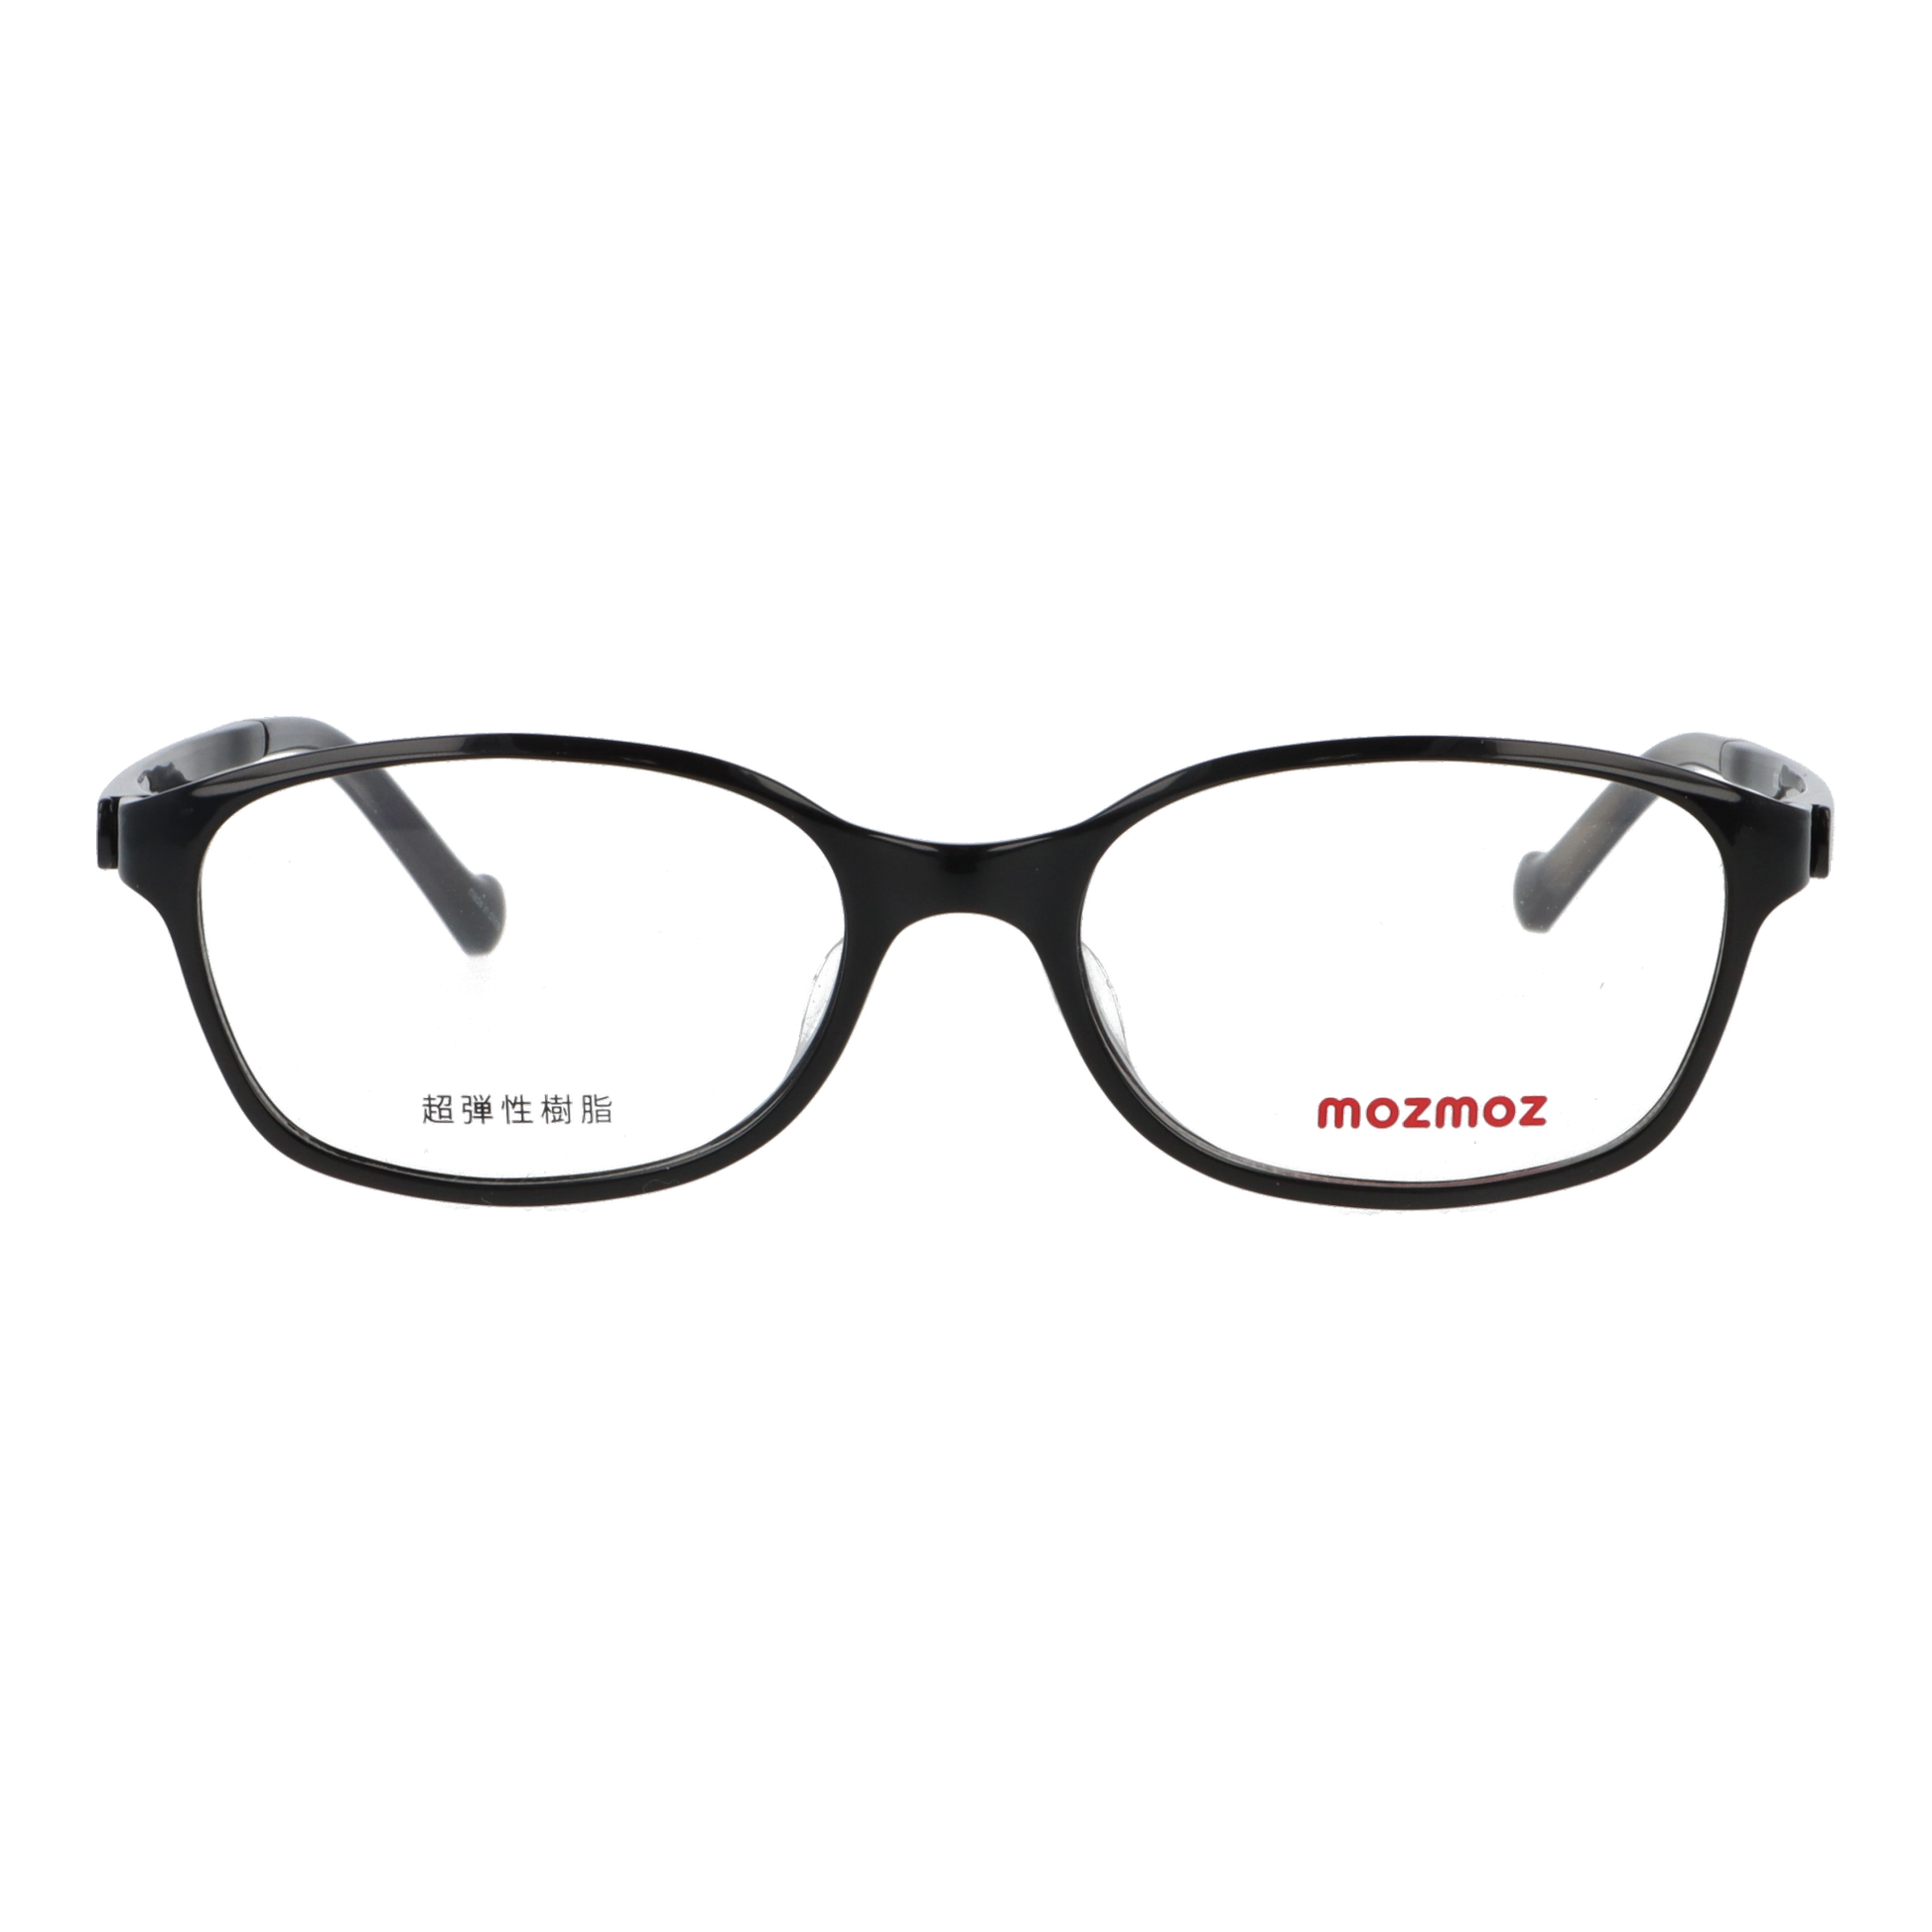 正面から見たアイウェア【軽量】こどもメガネ mo3001のカラーブラック